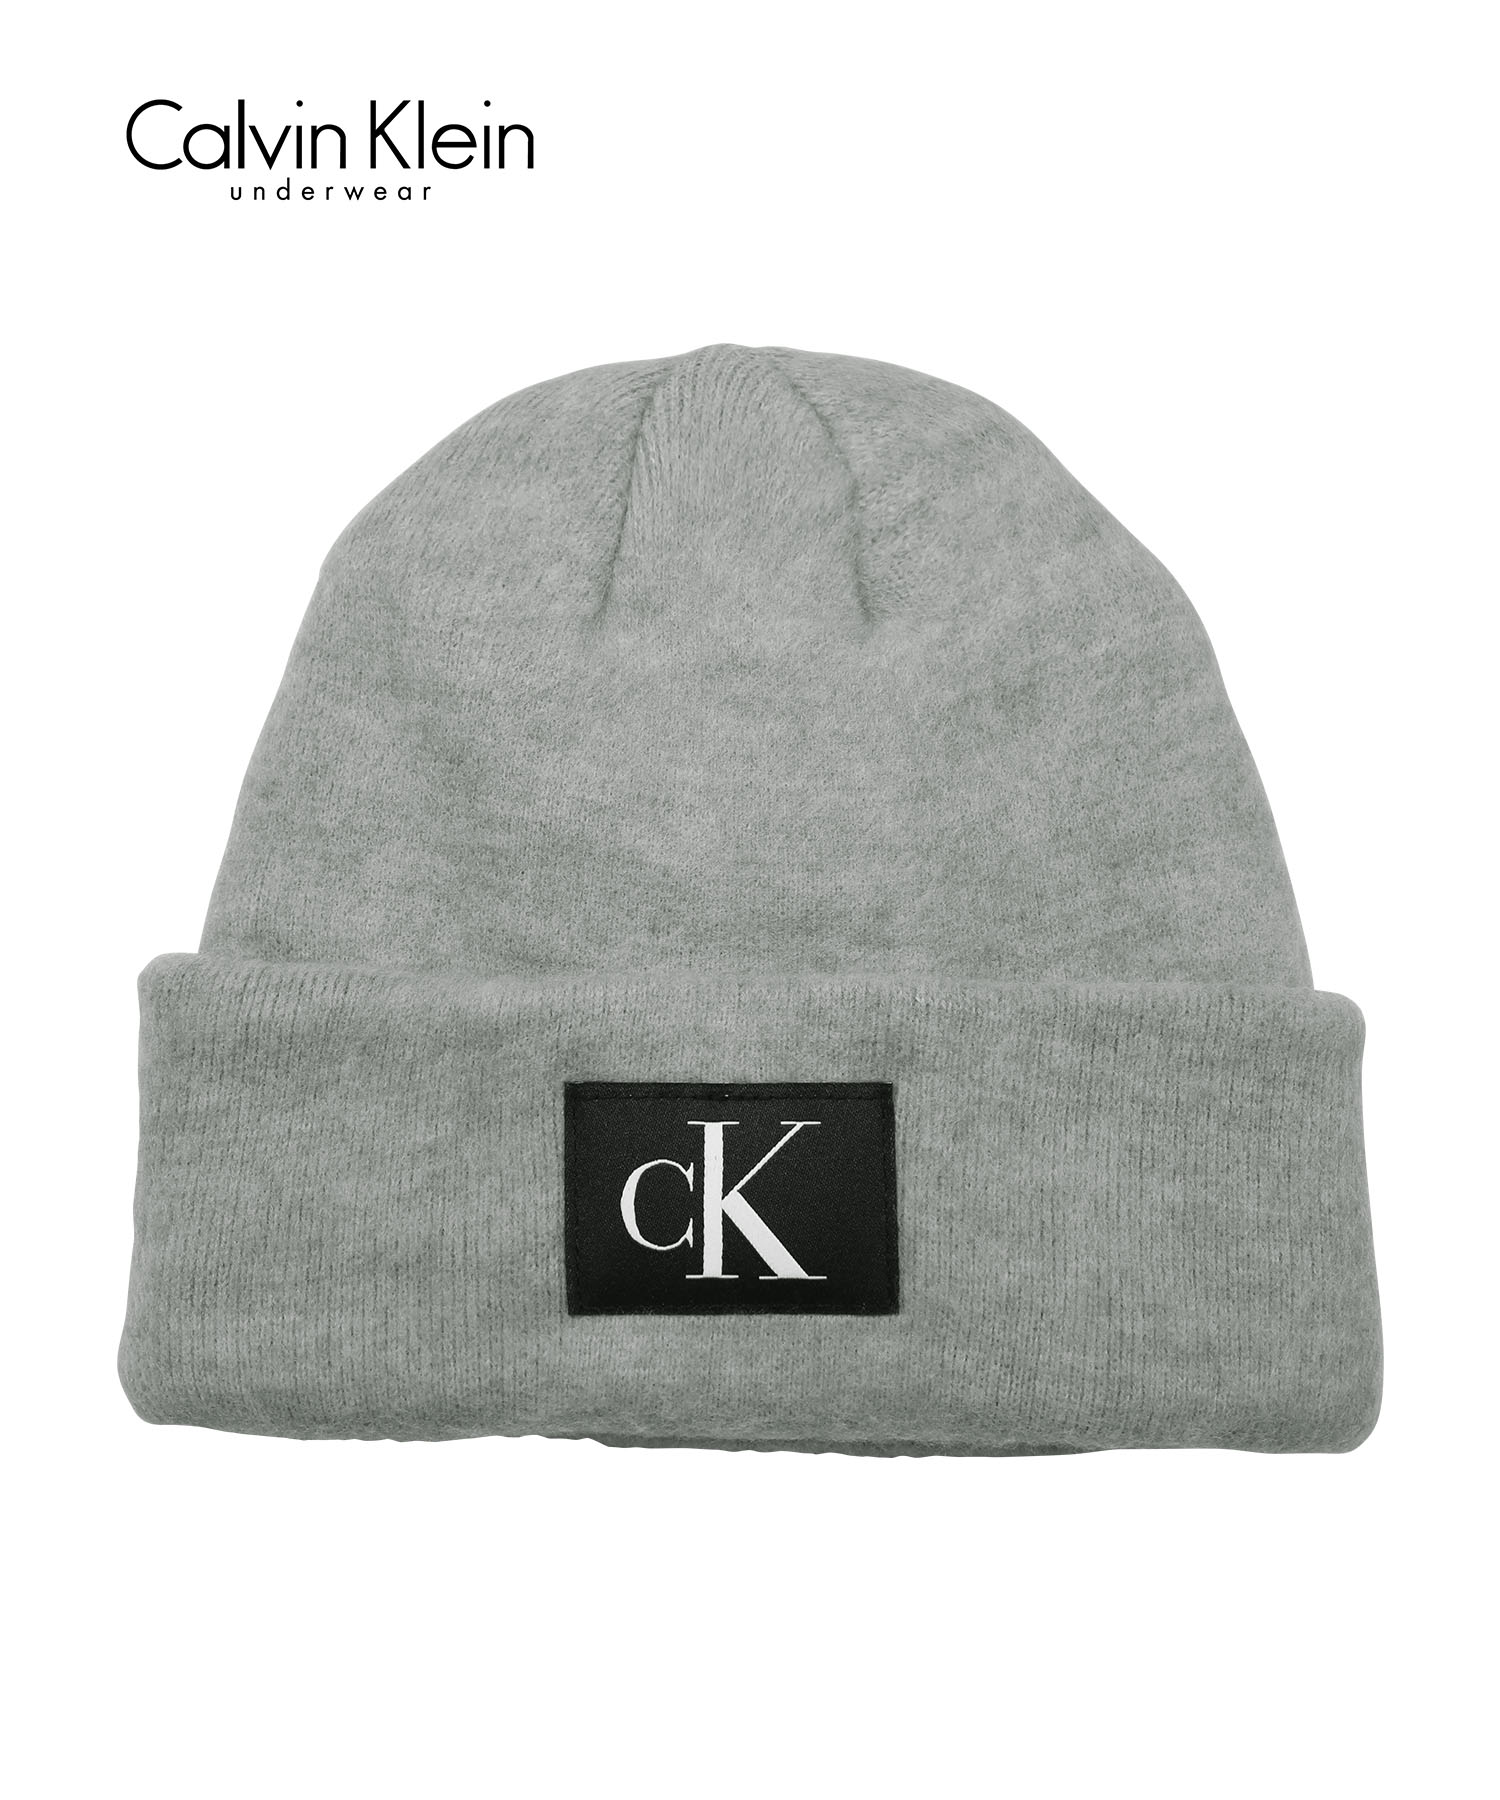 カルバンクライン Calvin Klein ニット帽 ユニセックス 帽子 ビーニー 